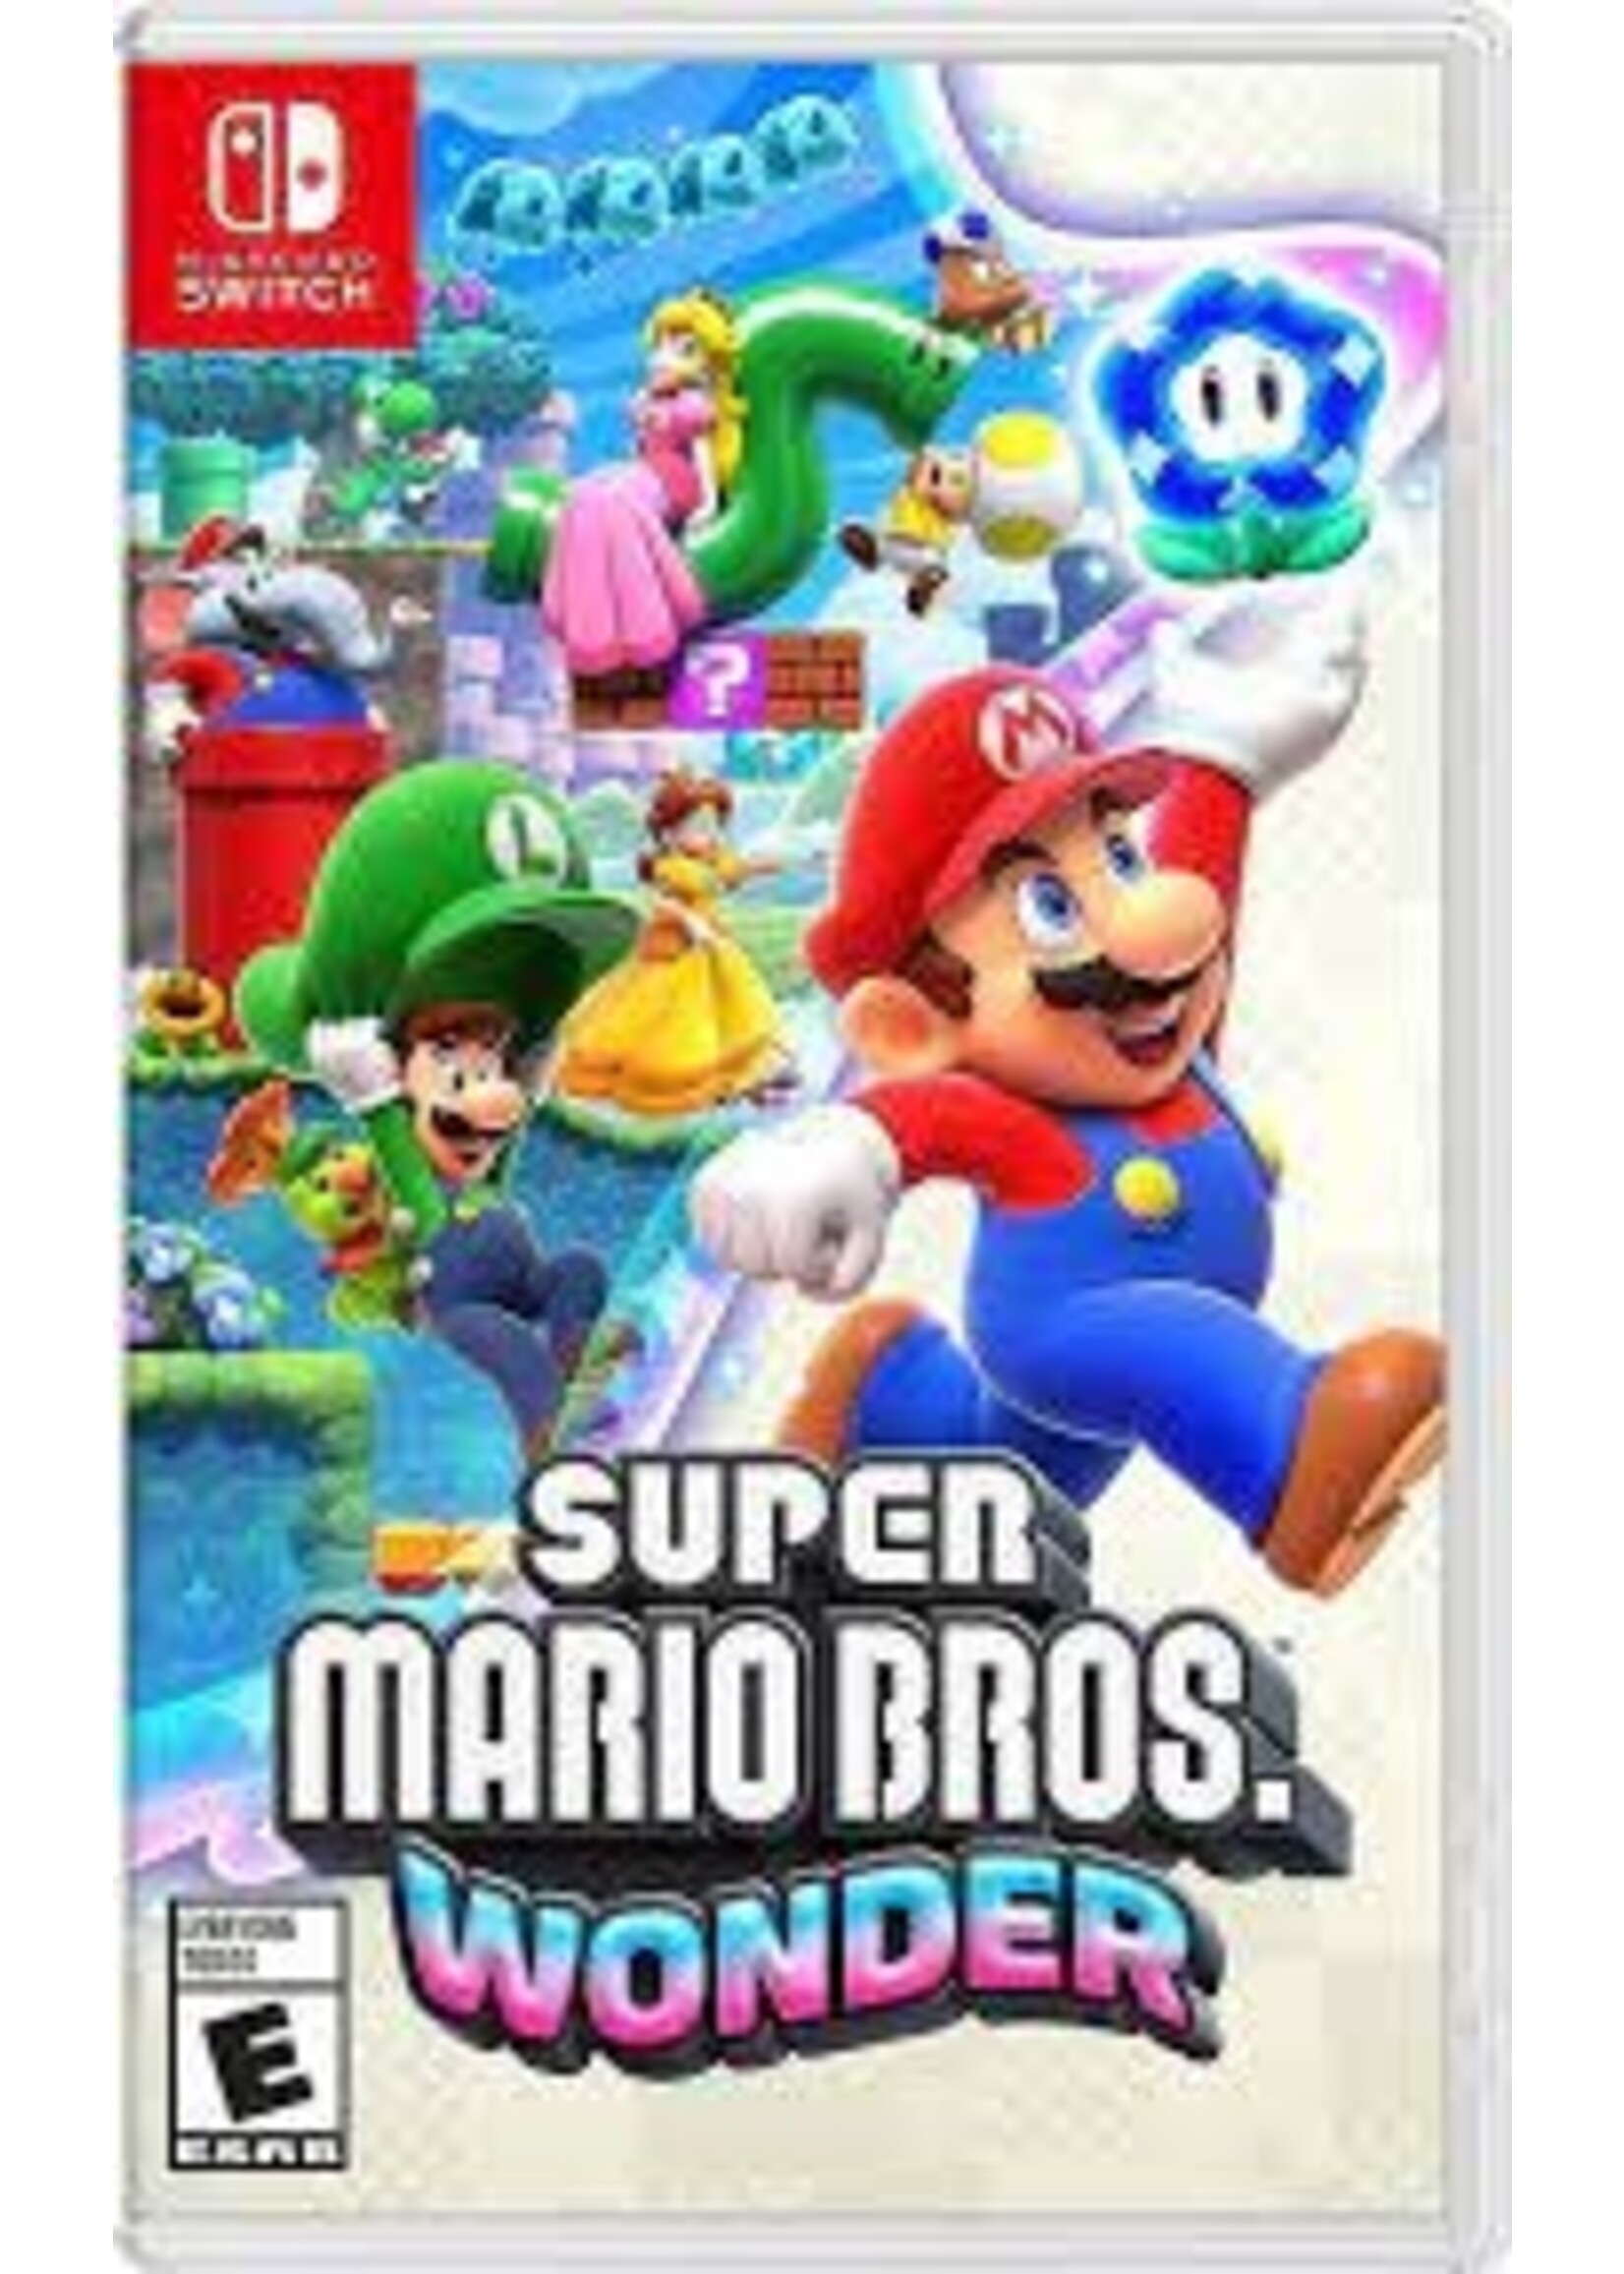 Super Mario Bros Wonder - SWITCH NEW